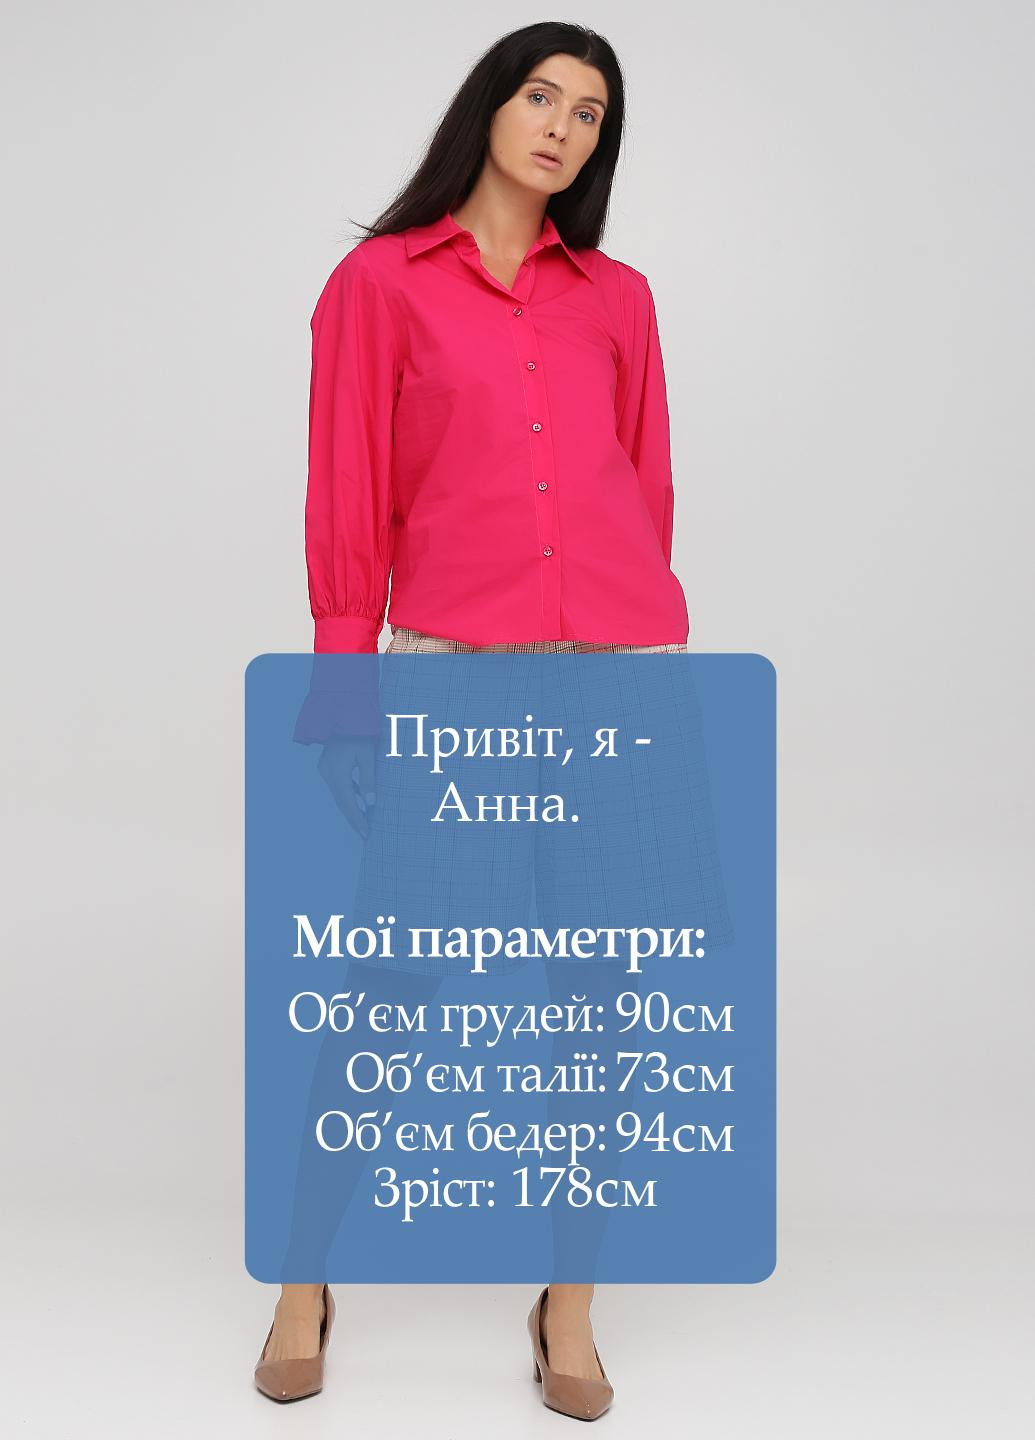 Розовый демисезонный комплект (блуза, шорты) The LuLu by Lumina